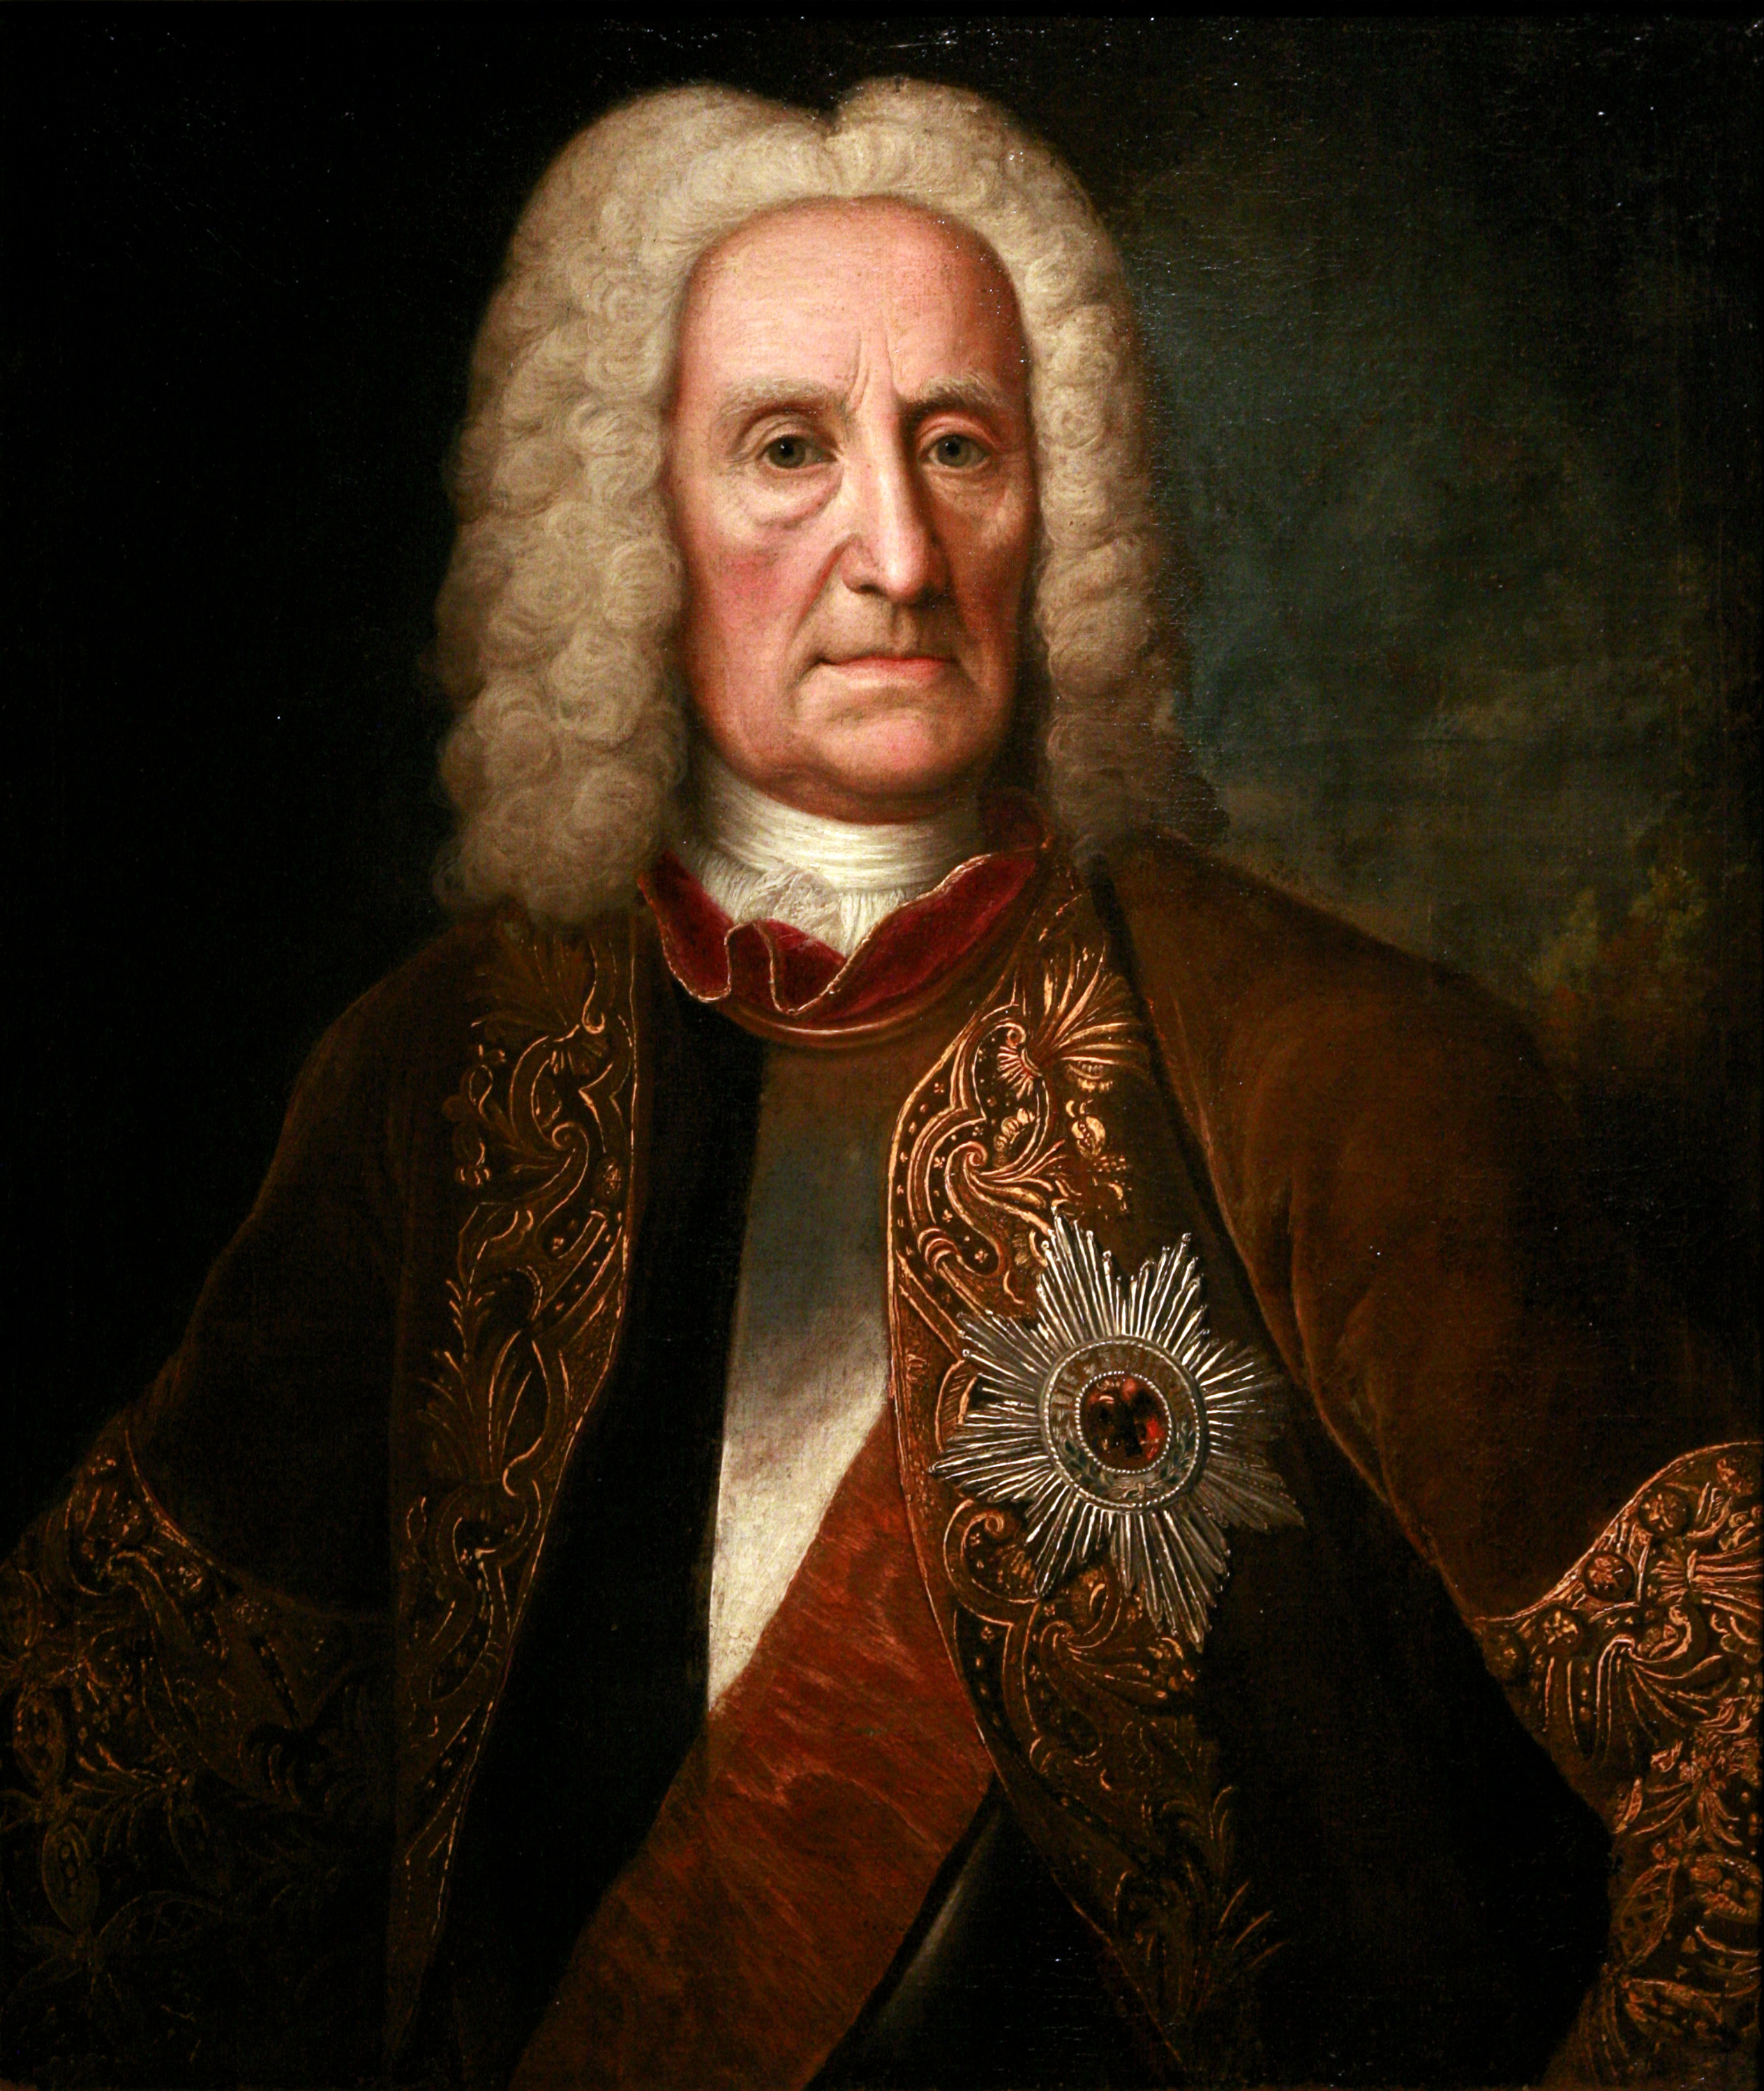 Johann Reinhard III of Hanau-Lichtenberg--Johann-Christian Fiedler-f4559233